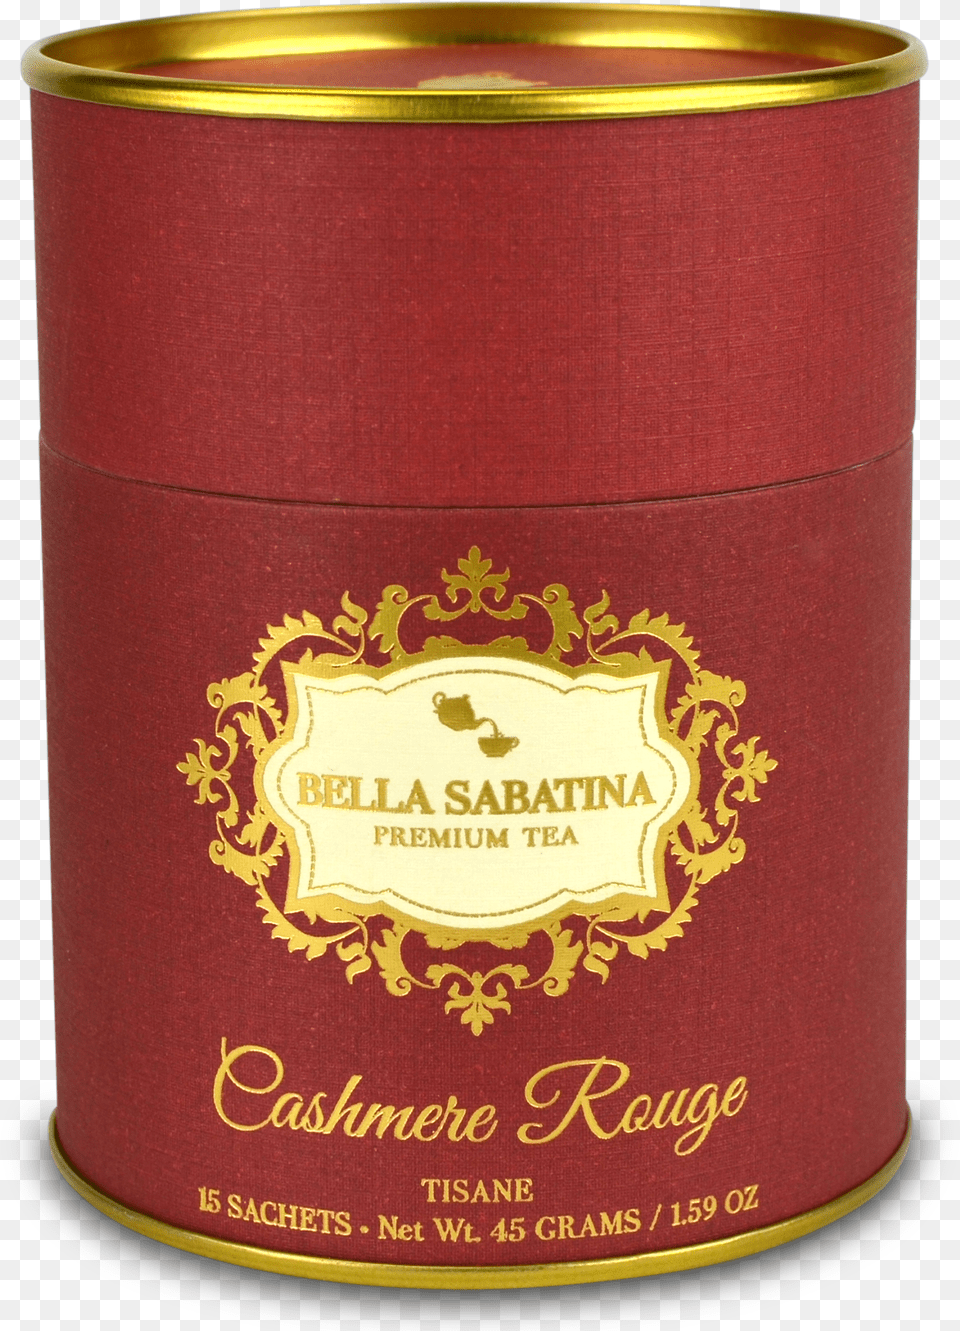 Bella Sabatina Premium Tea Box, Can, Tin Free Png